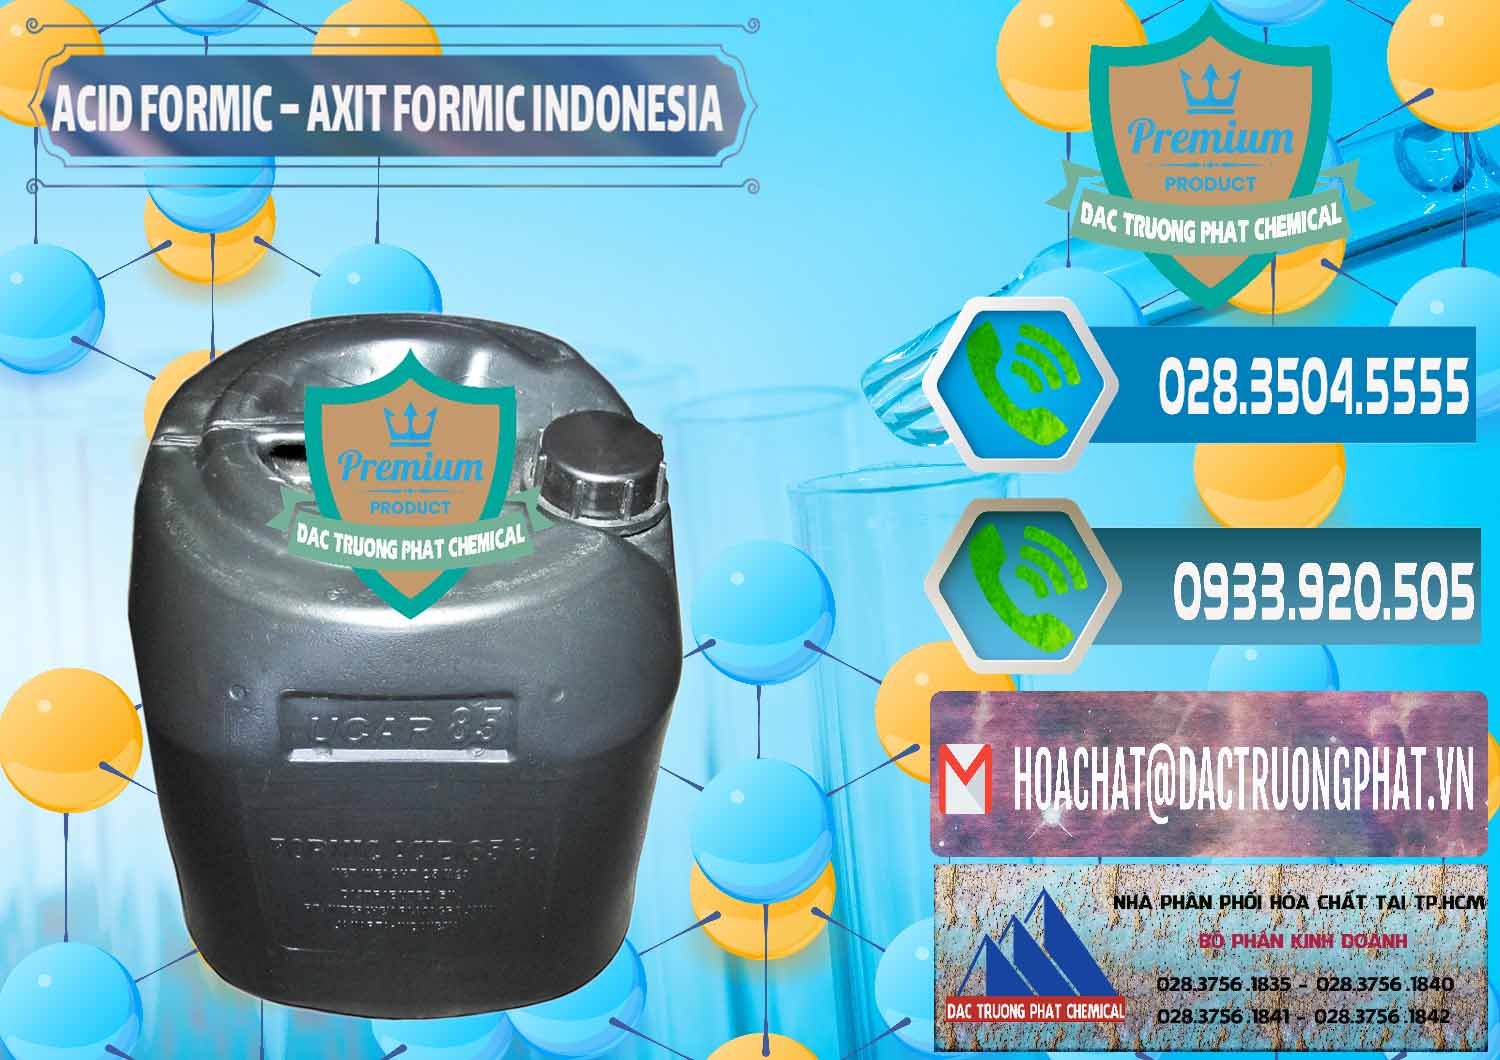 Chuyên kinh doanh - bán Acid Formic - Axit Formic Indonesia - 0026 - Nơi phân phối _ cung cấp hóa chất tại TP.HCM - congtyhoachat.net